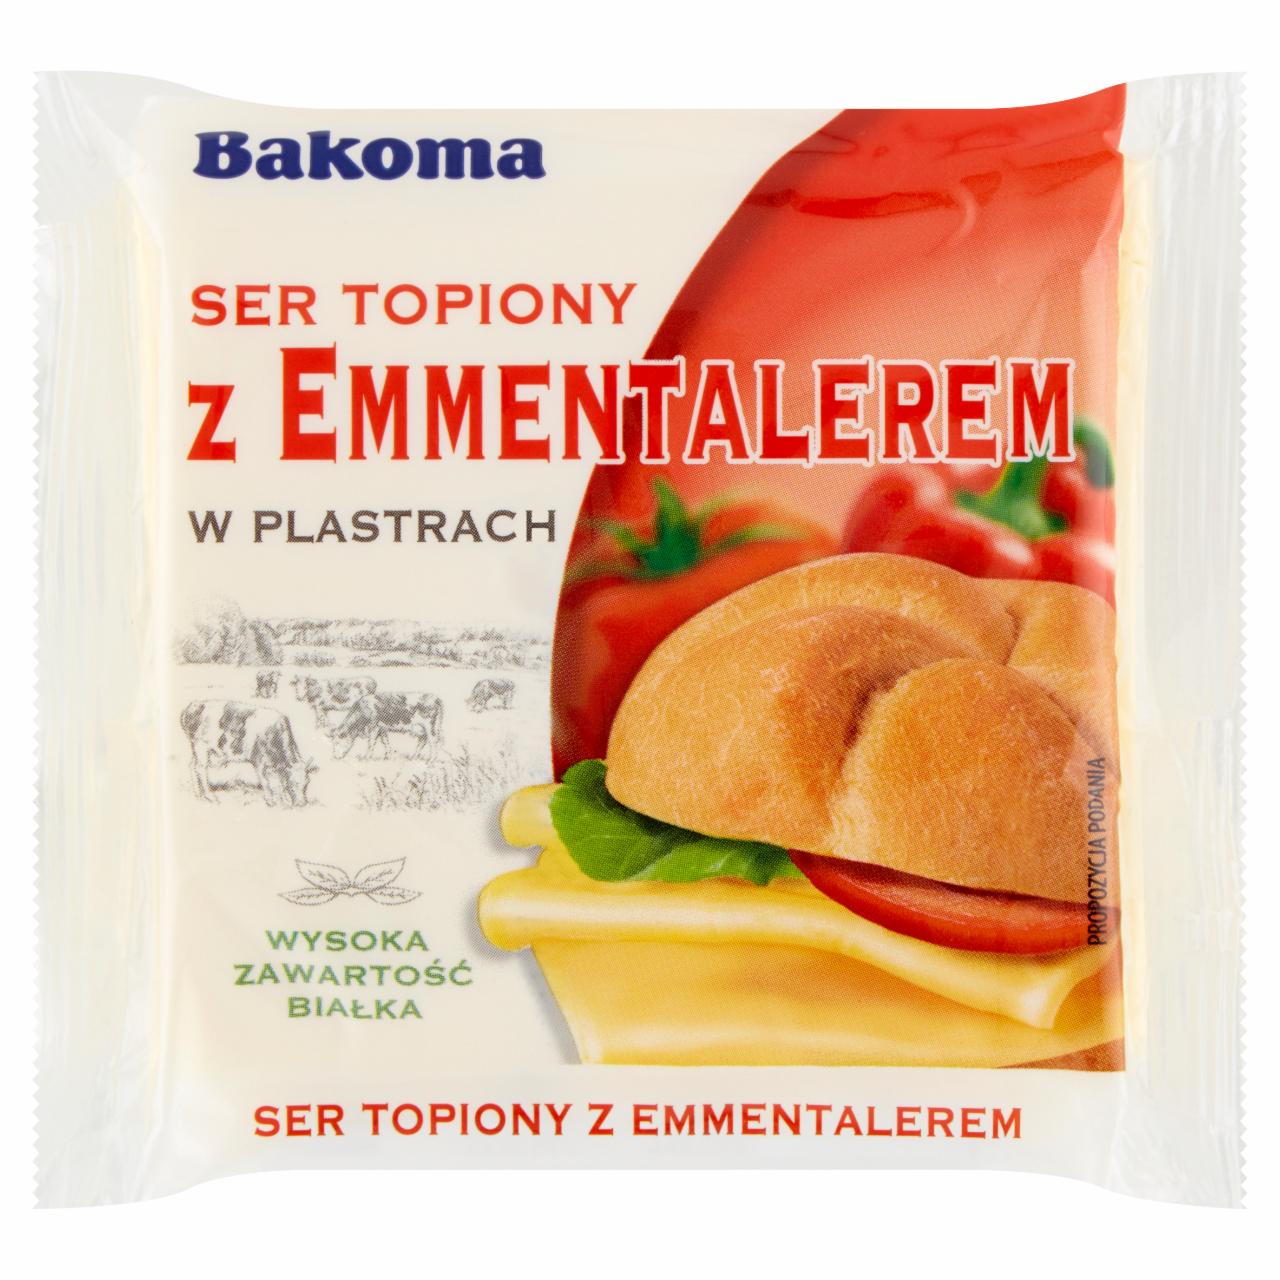 Zdjęcia - Bakoma Ser topiony z emmentalerem w plastrach 130 g (7 sztuk)